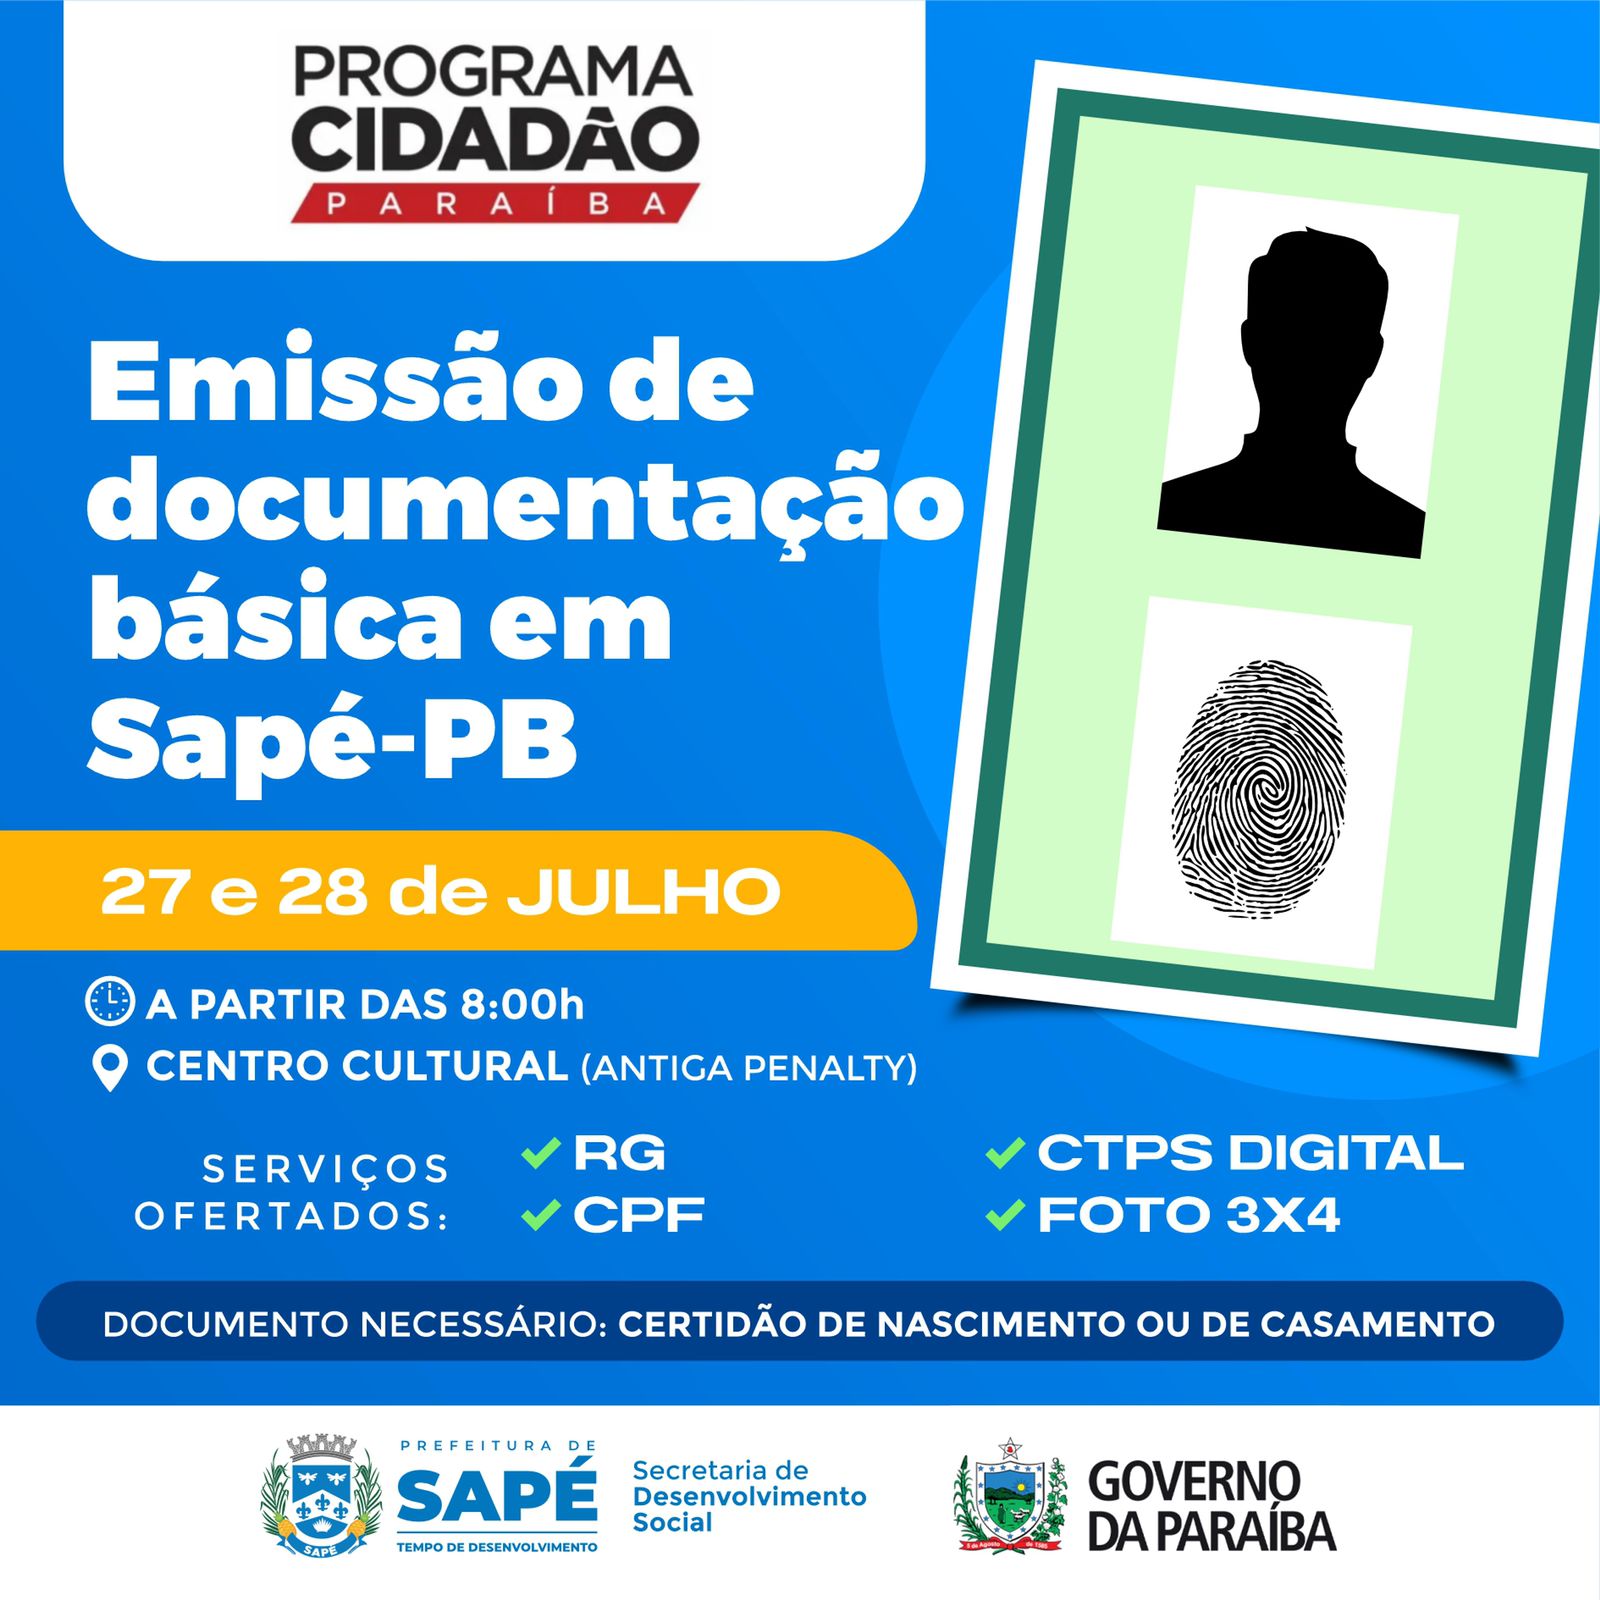 Programa Cidadão emite documentos gratuitamente na próxima semana em Sapé